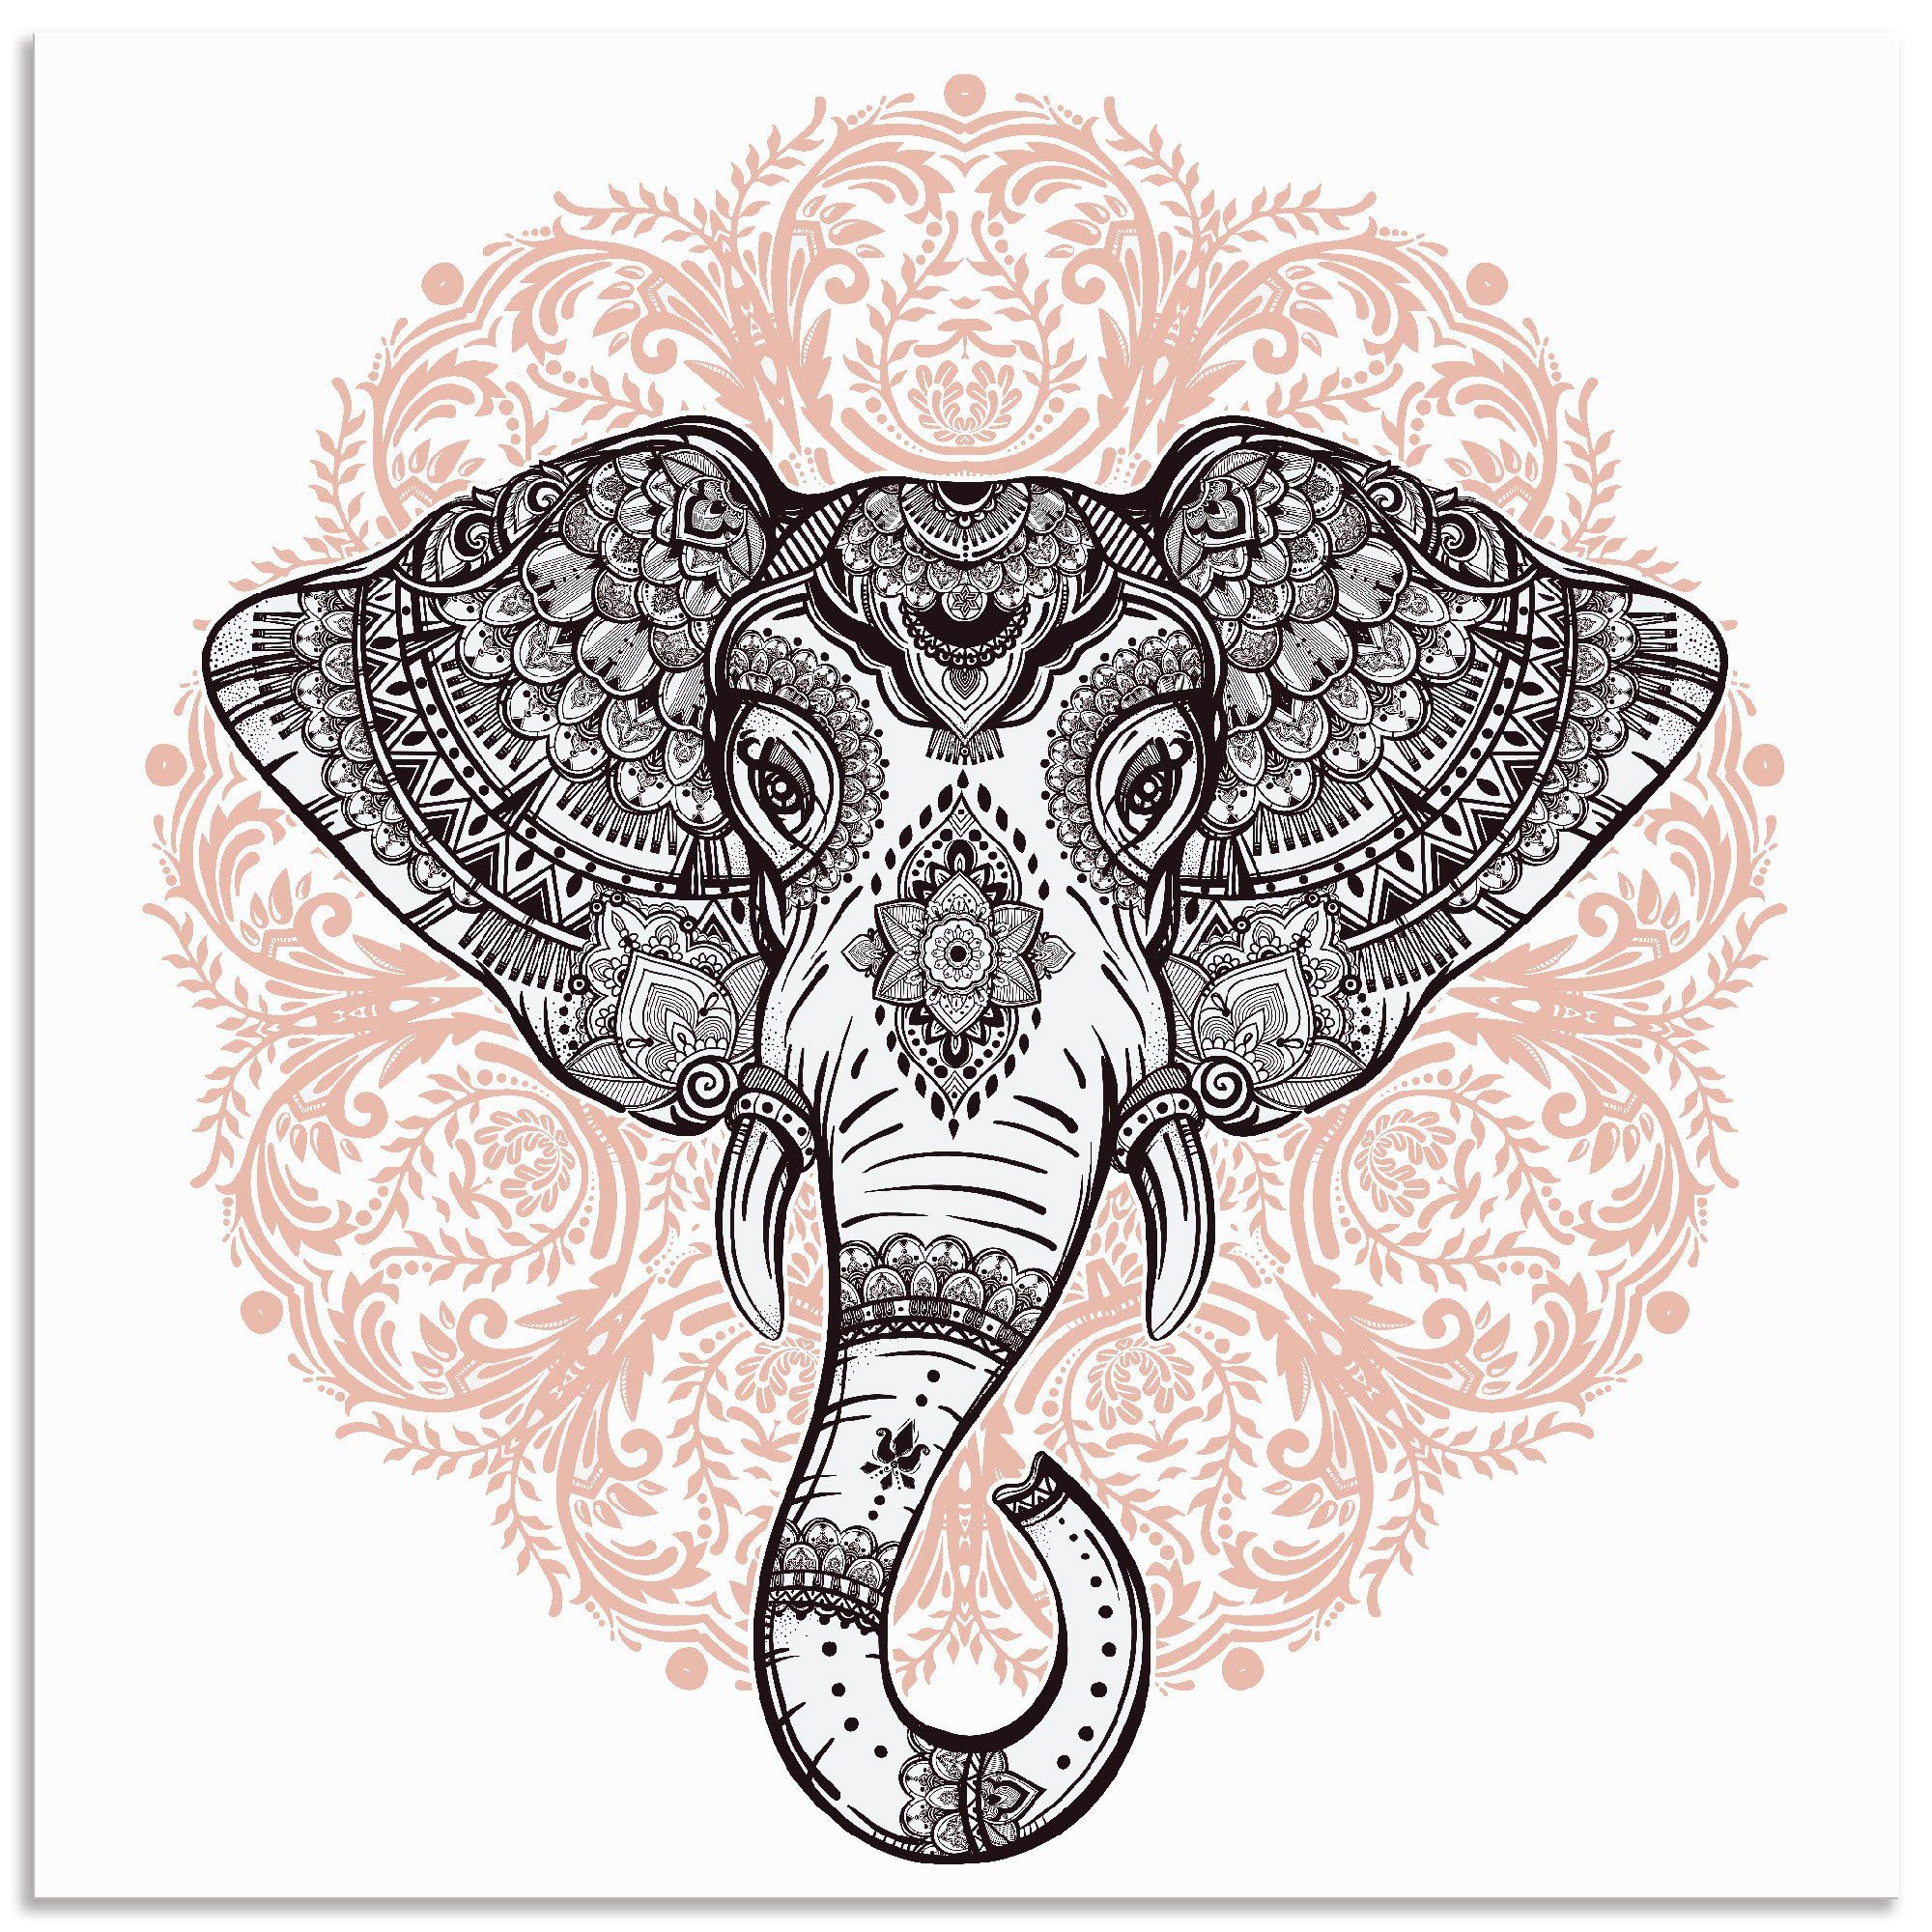 Artland Artprint Vintage mandala olifant in vele afmetingen & productsoorten - artprint van aluminium / artprint voor buiten, artprint op linnen, poster, muursticker / wandfolie oo